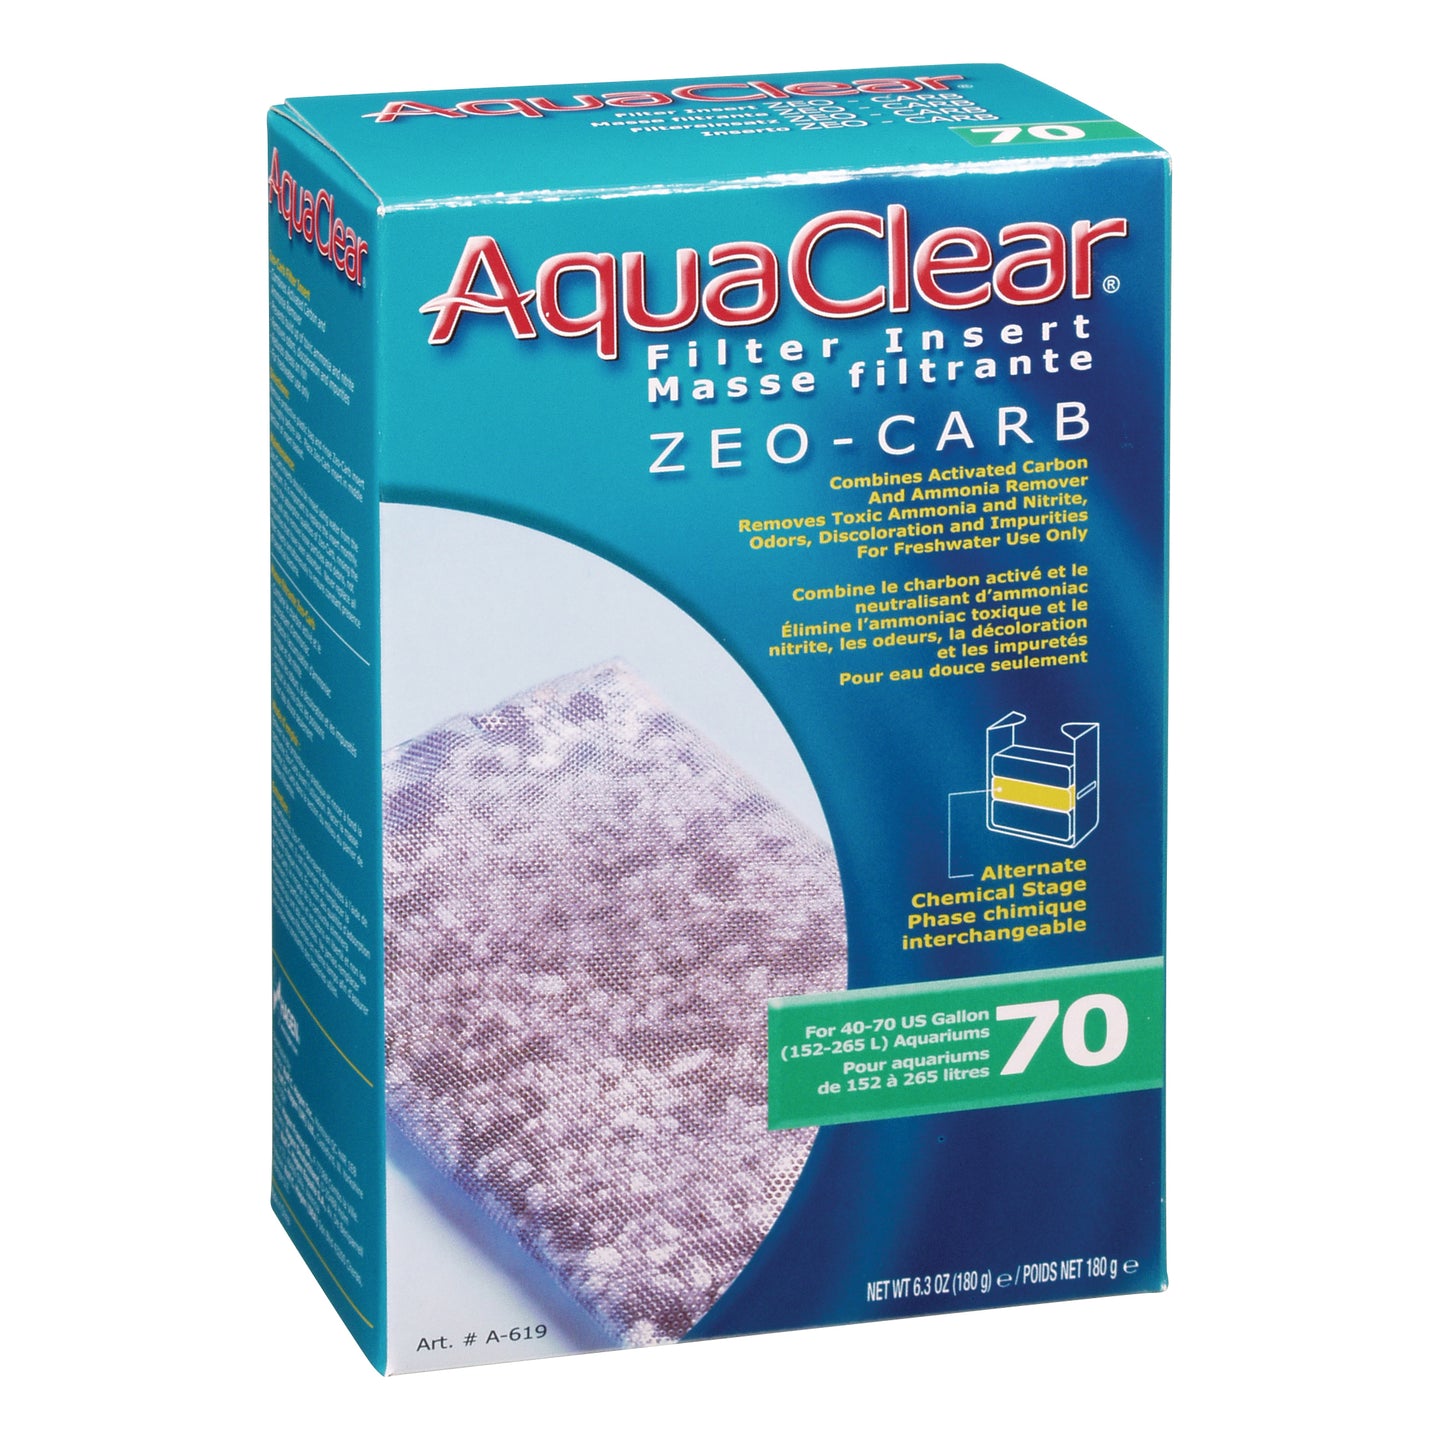 AquaClear Zeo-Carb Filter